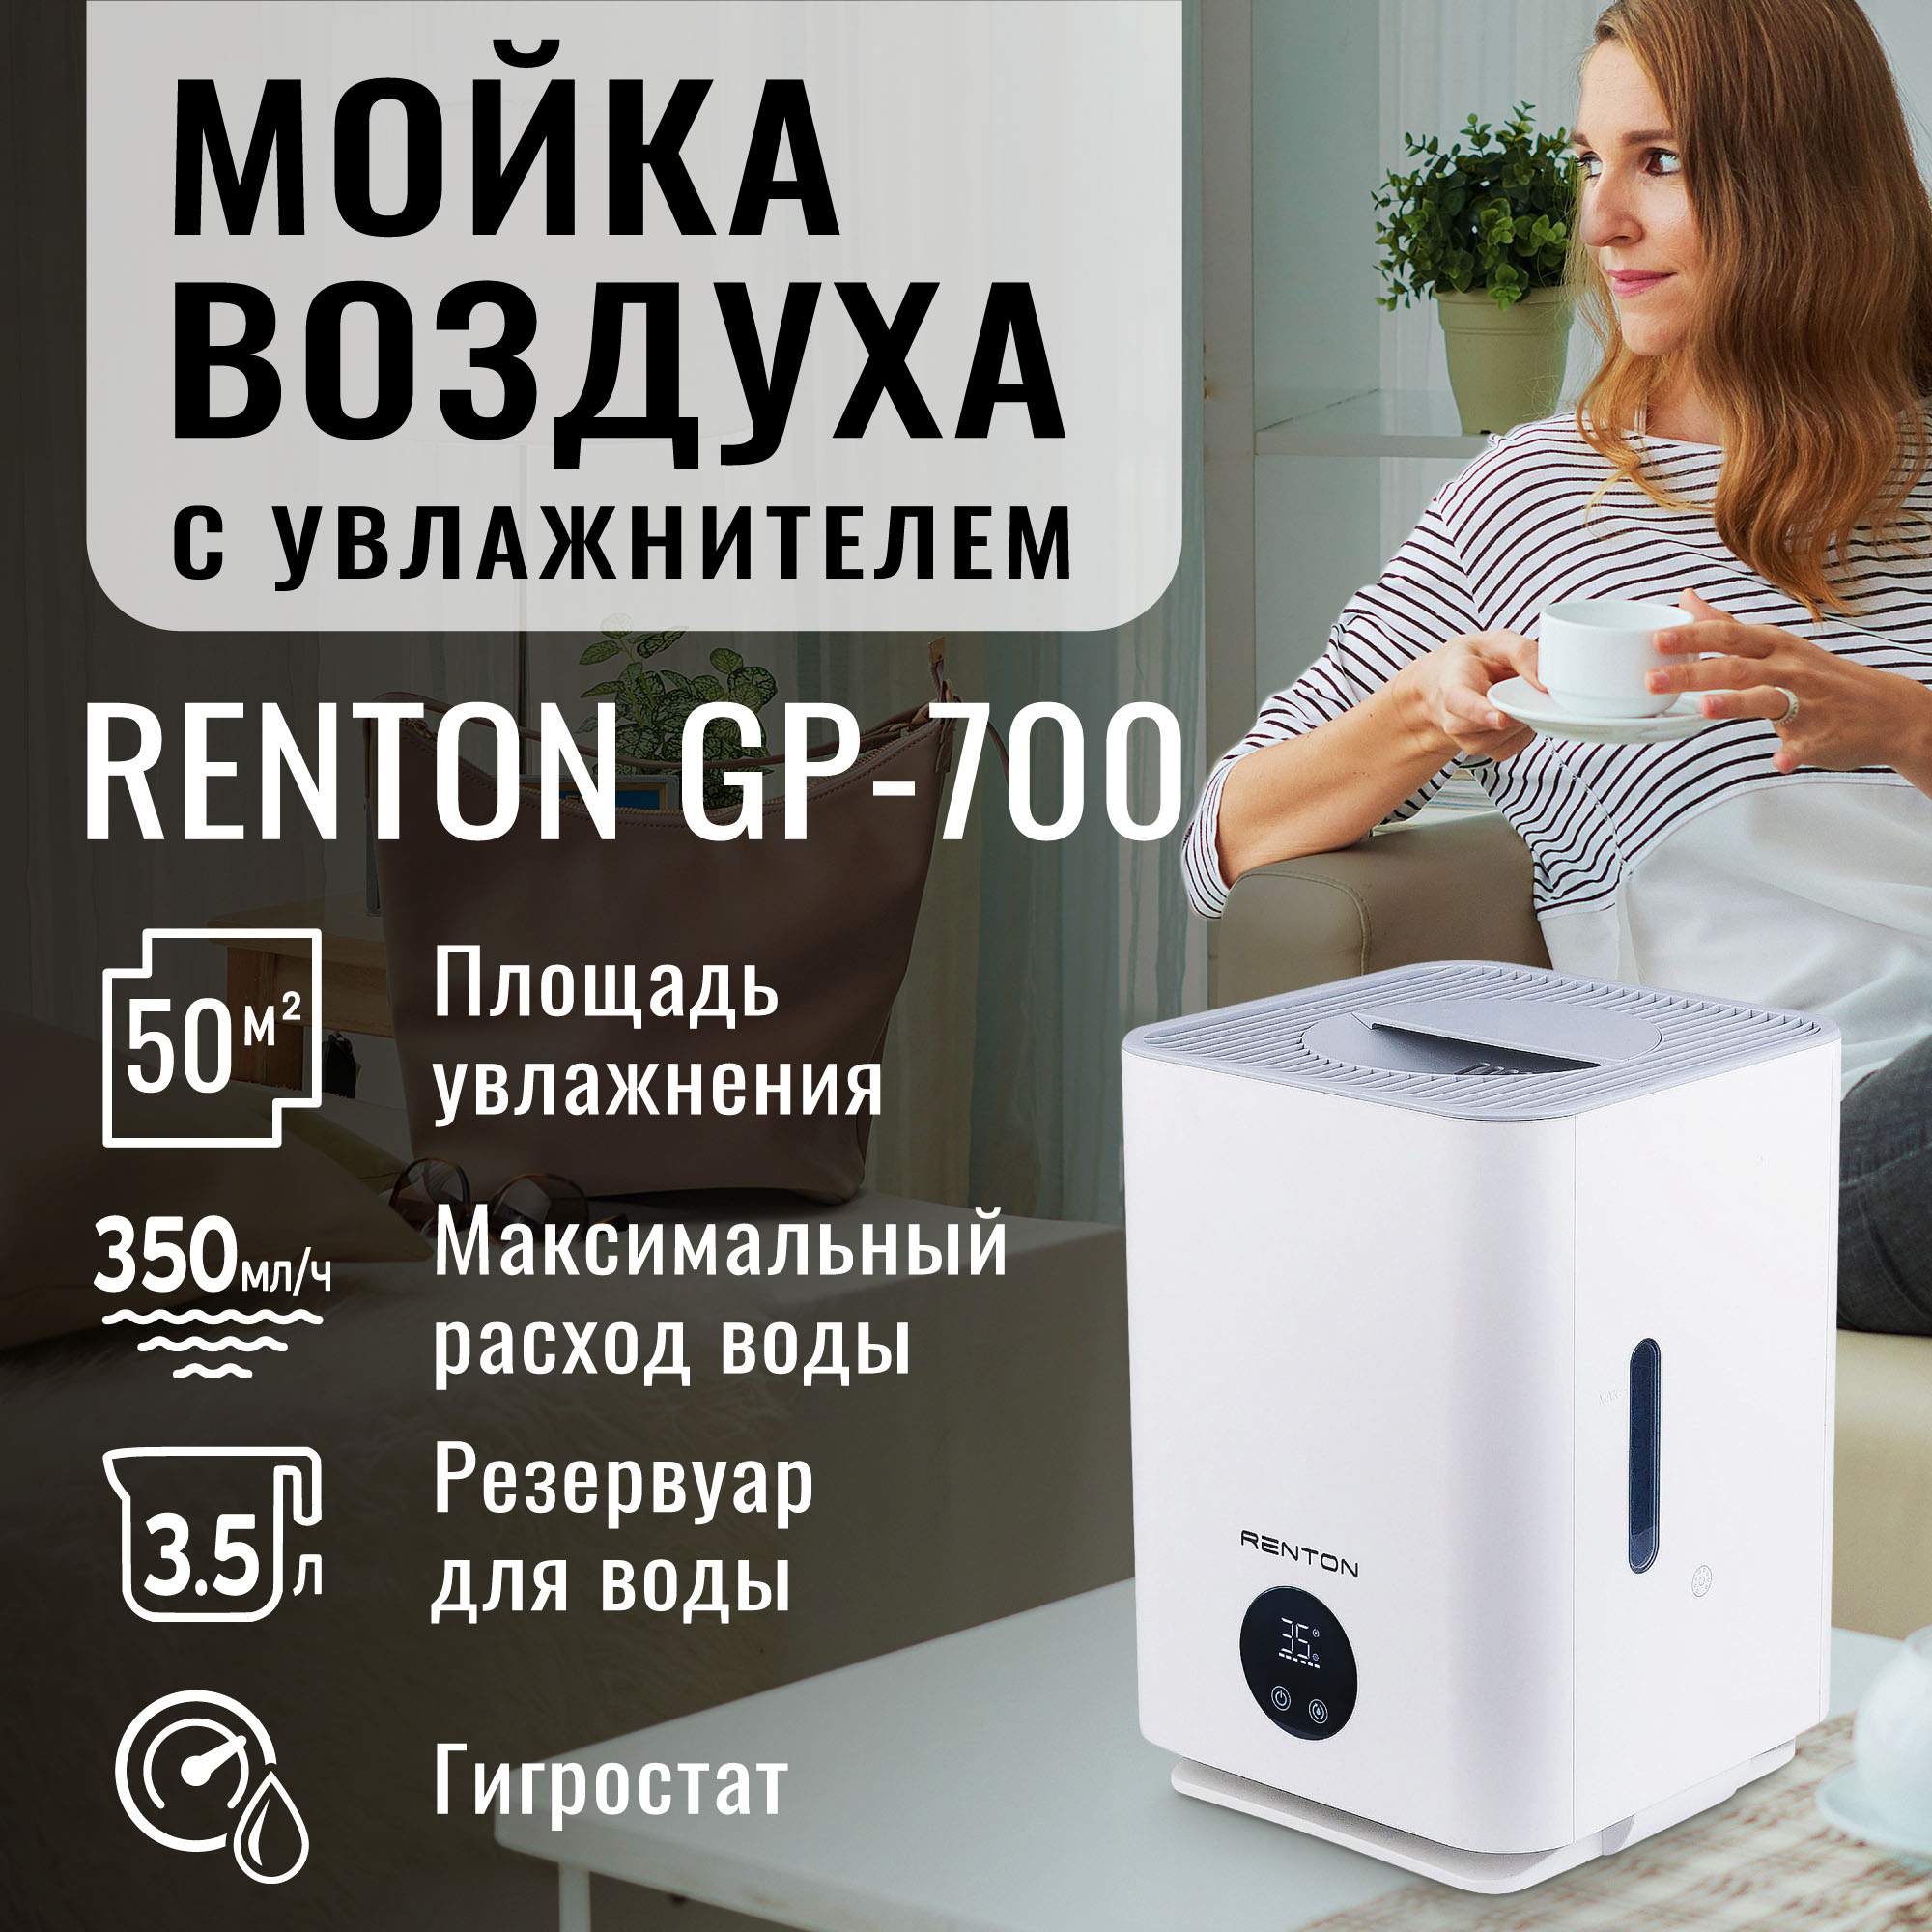 Мойка воздуха Renton GP-700 белая, купить в Москве, цены в интернет-магазинах на Мегамаркет